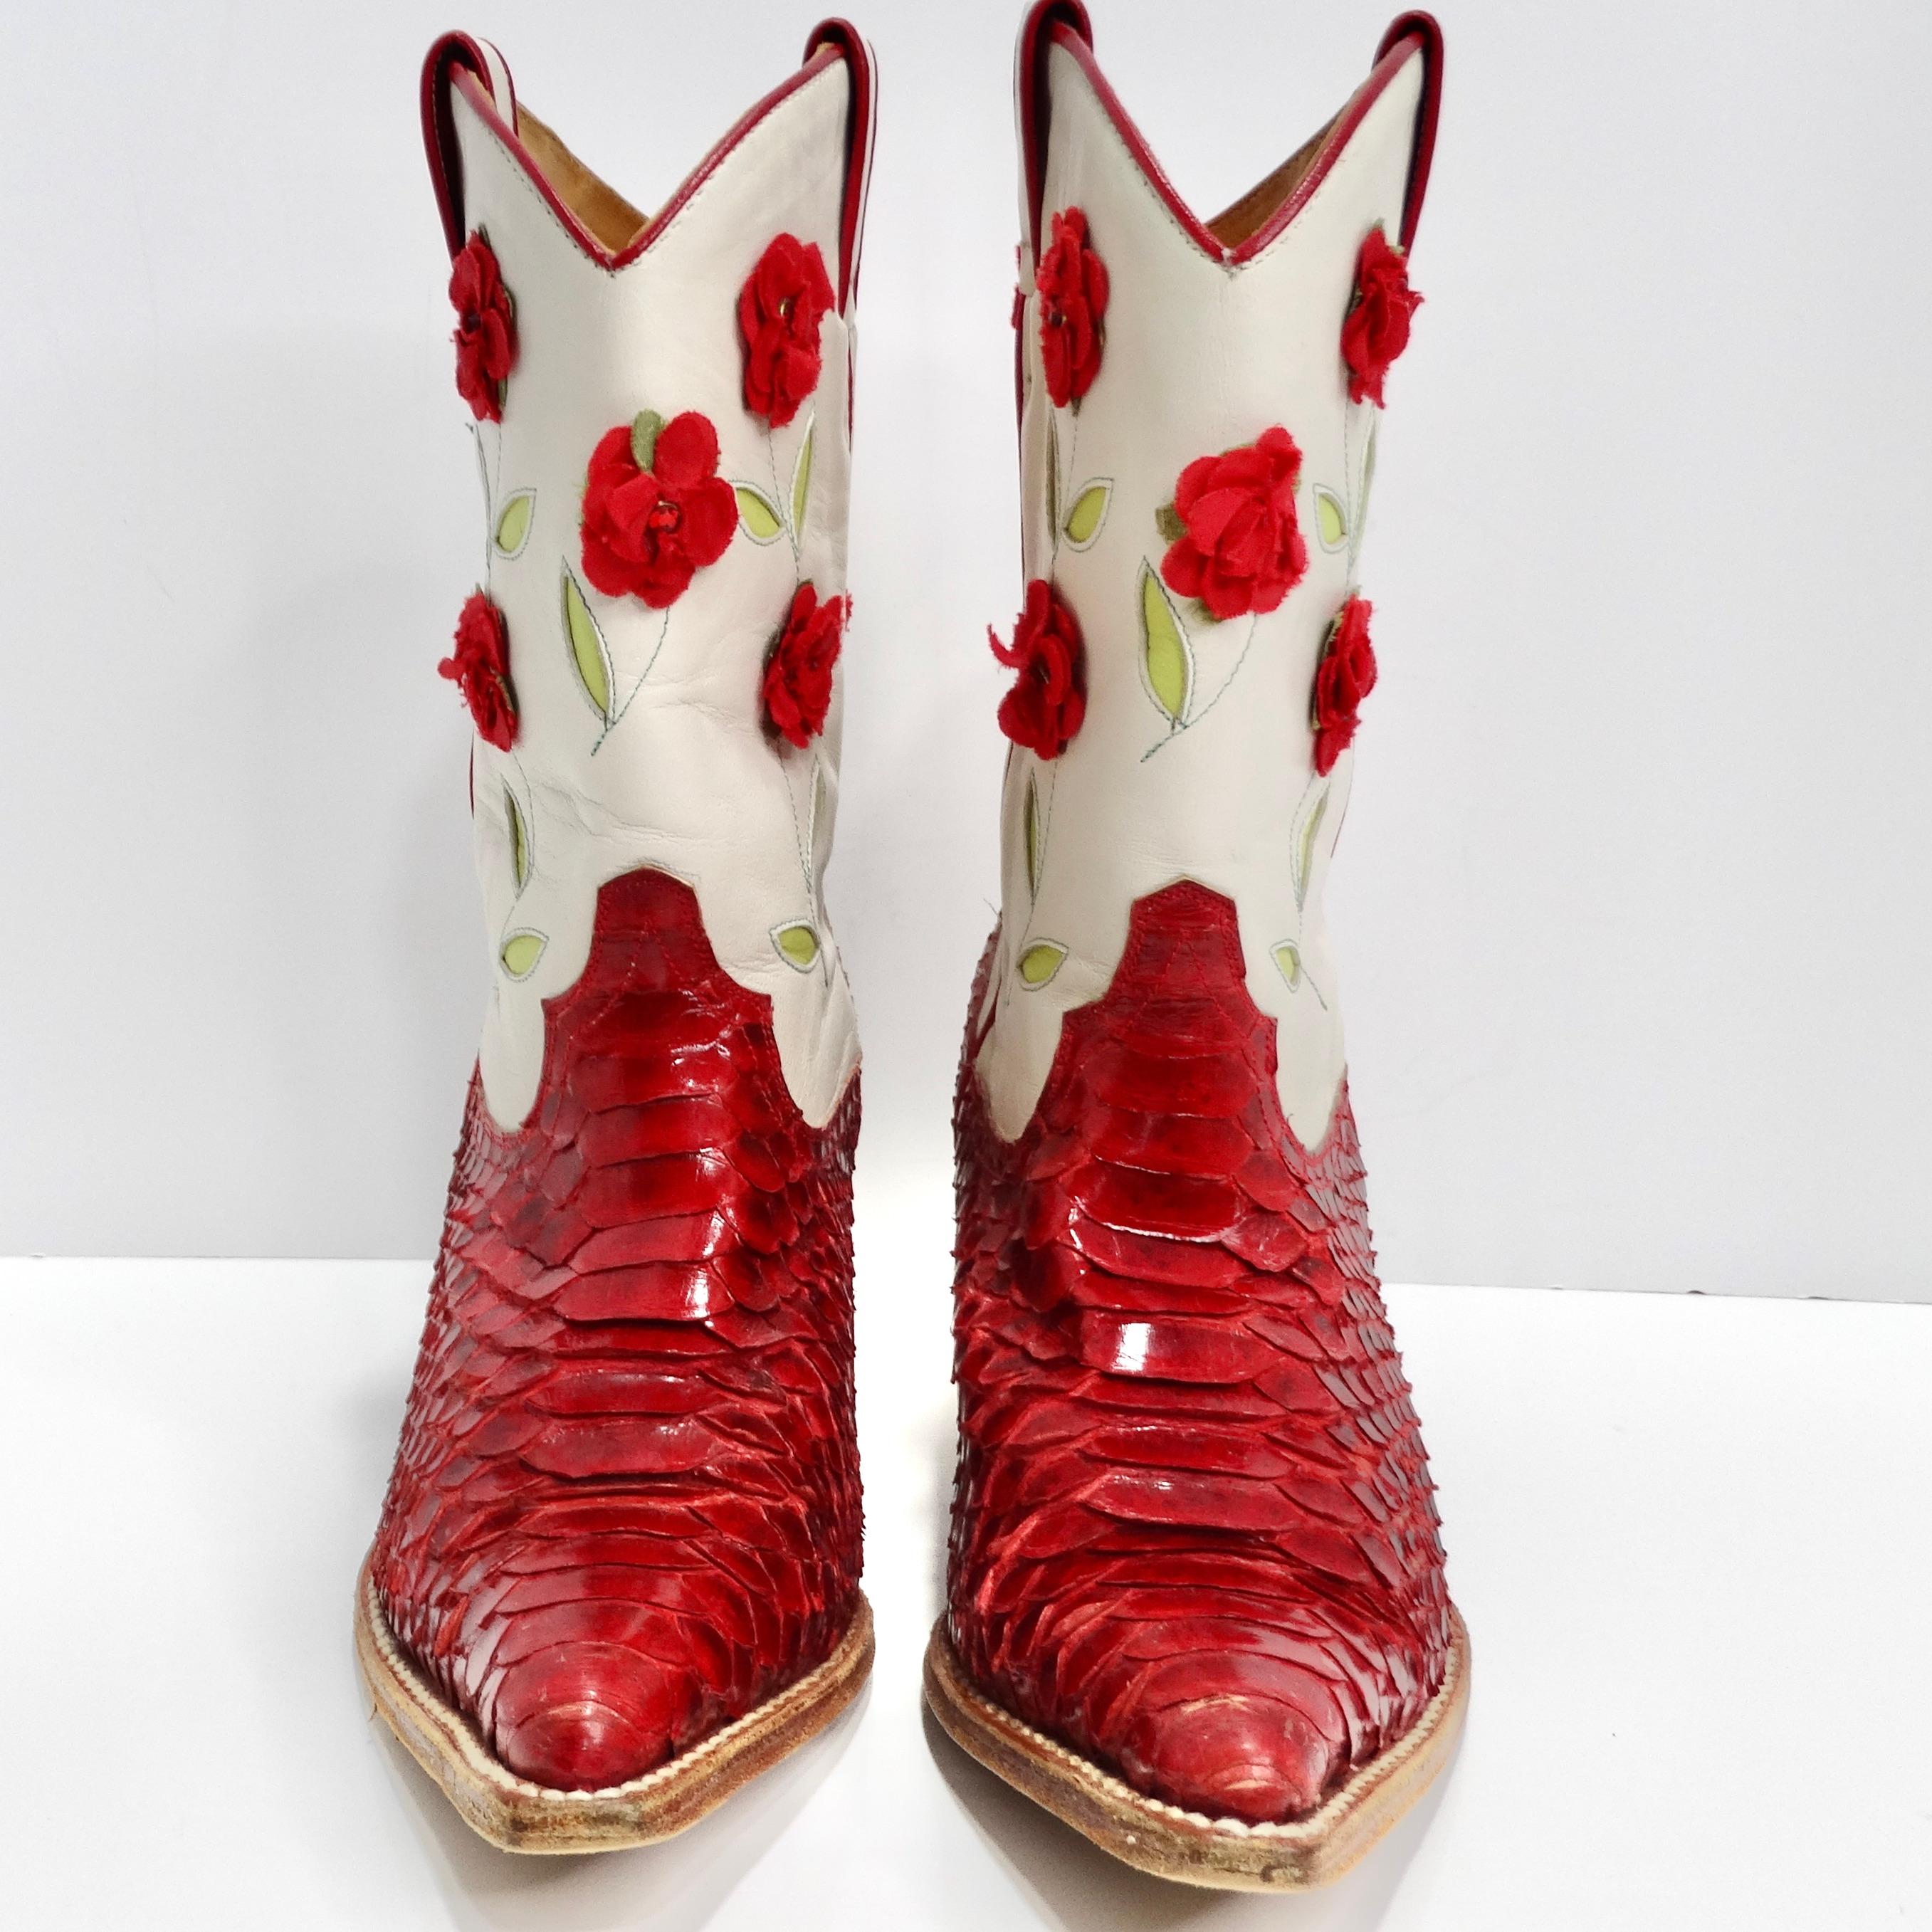 Entrez dans la lumière avec les bottes de cow-boy Tony Mora Red Python Floral Cowboy Boots. Confectionnées en cuir de python rouge véritable, ces bottes de cow-boy sont une véritable pièce d'apparat, dégageant confiance et style grâce à leur couleur